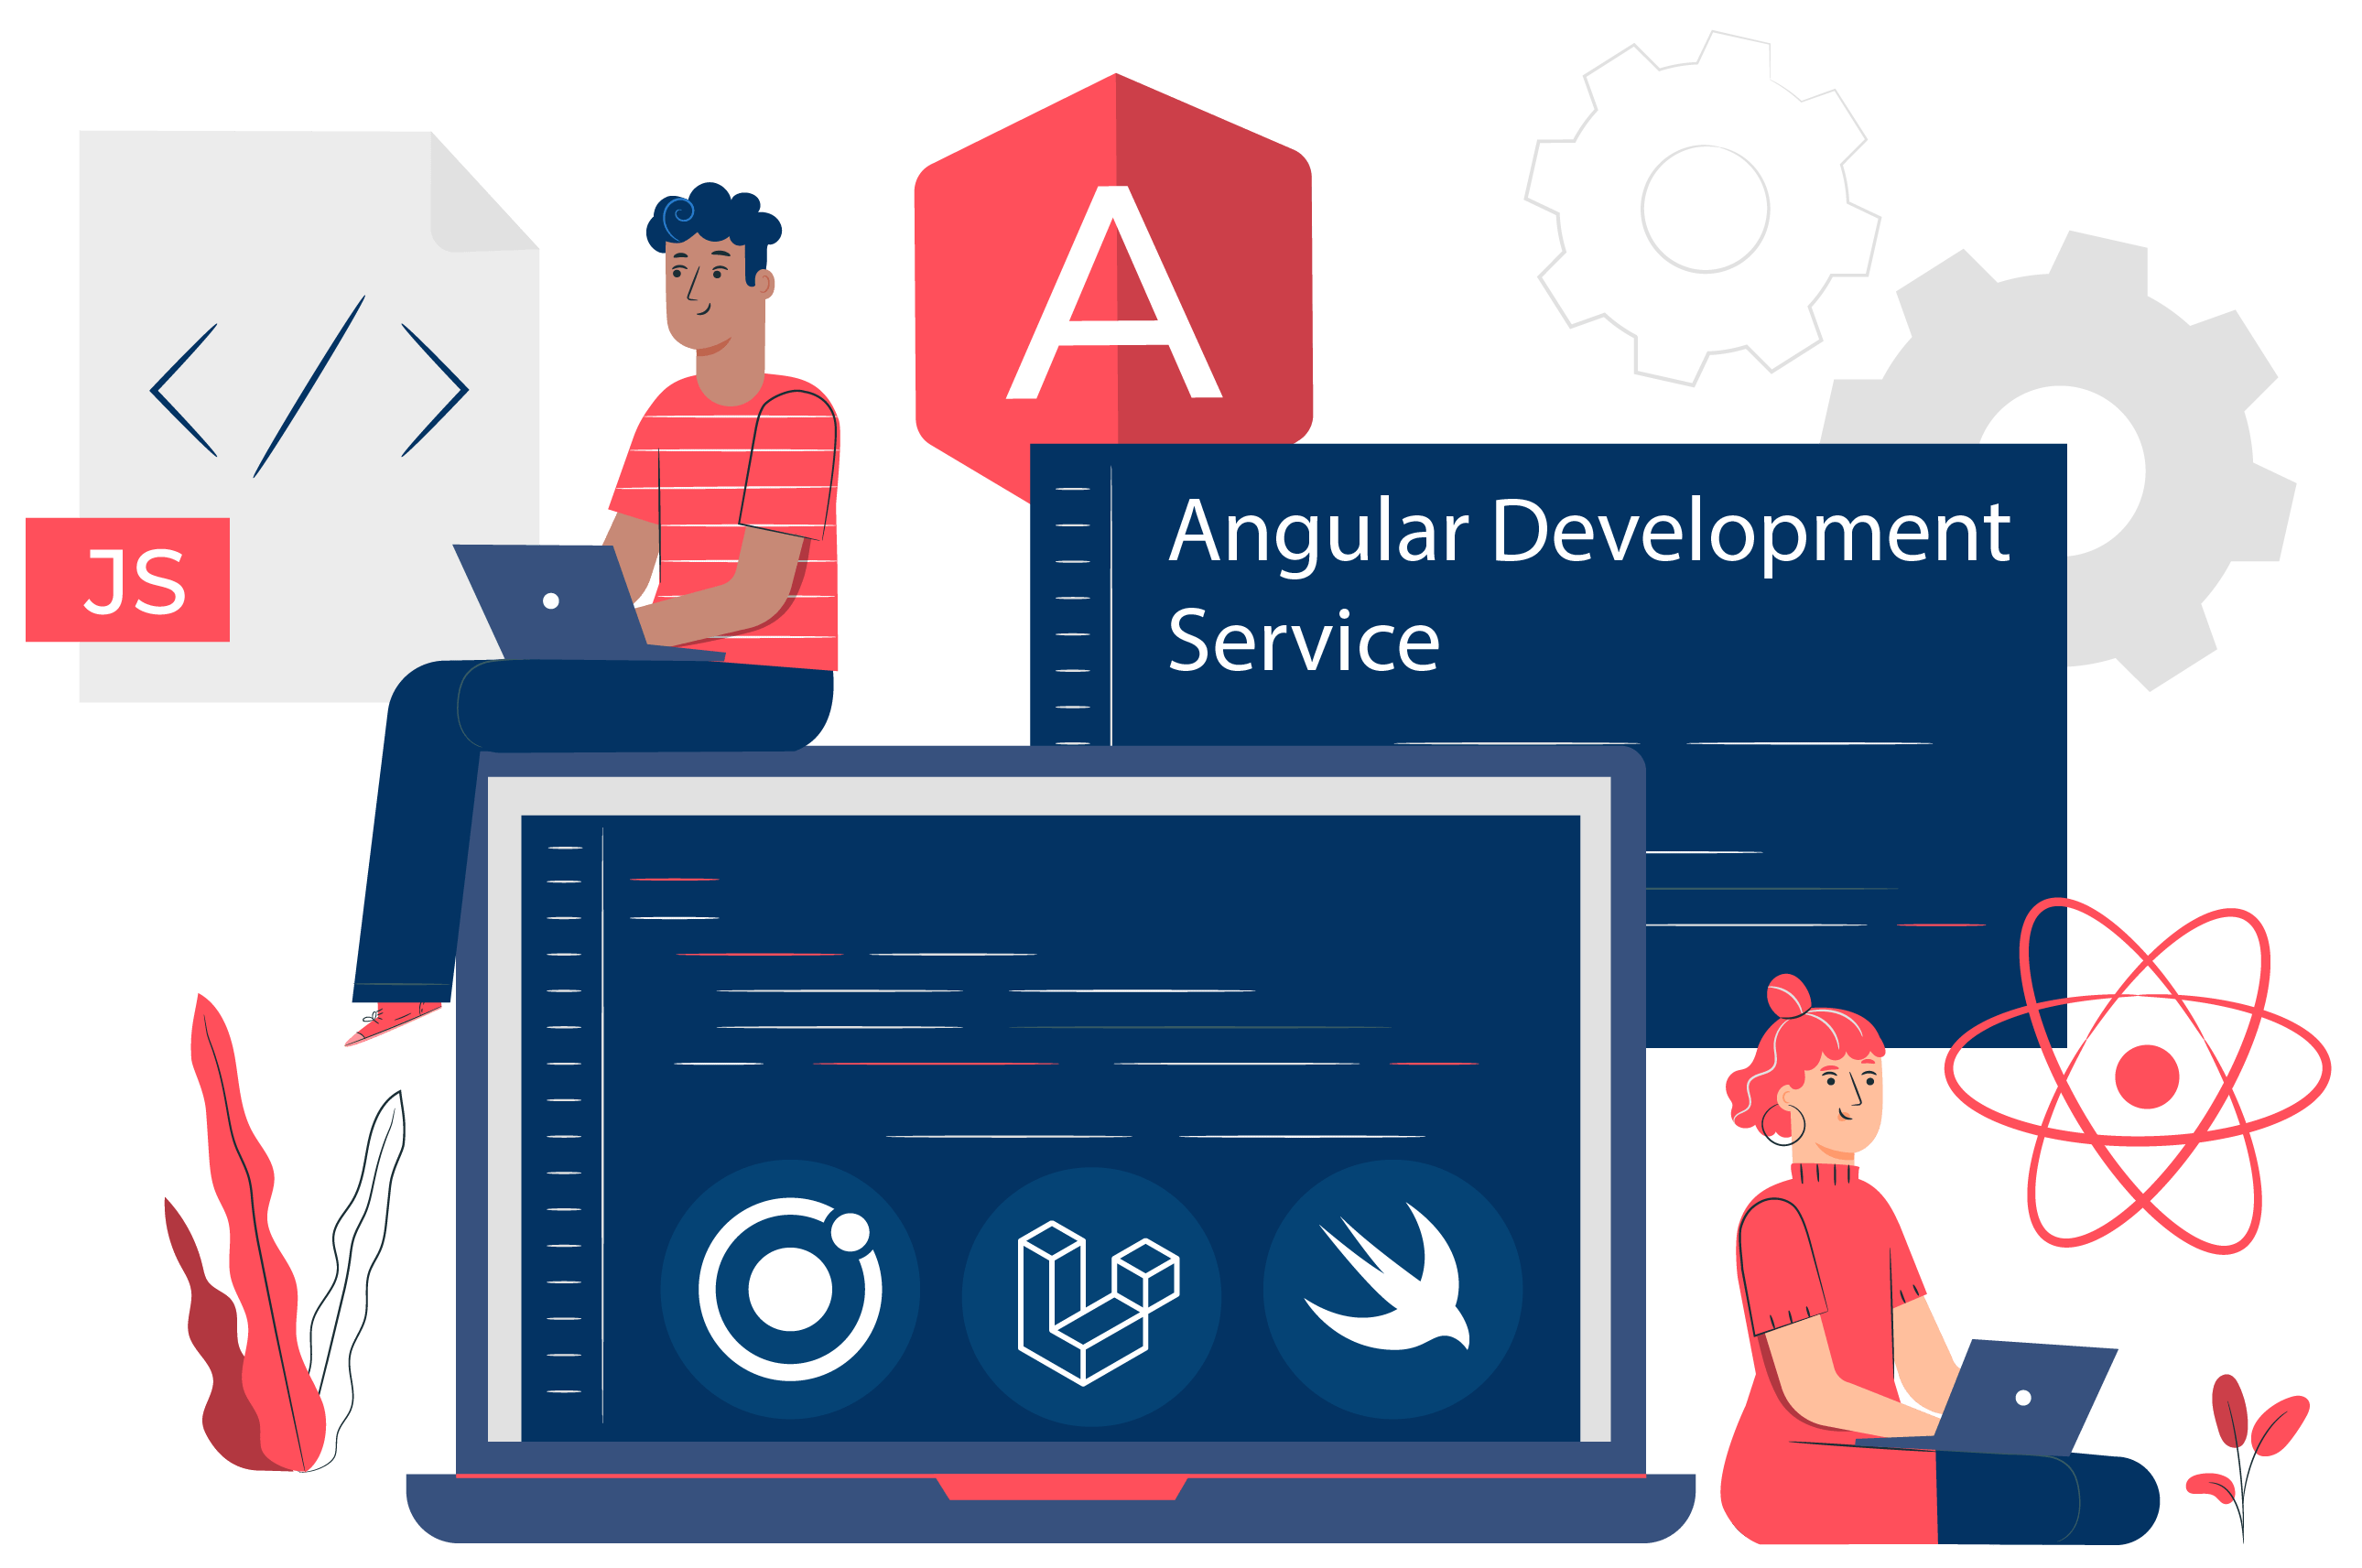 Angular Development Service